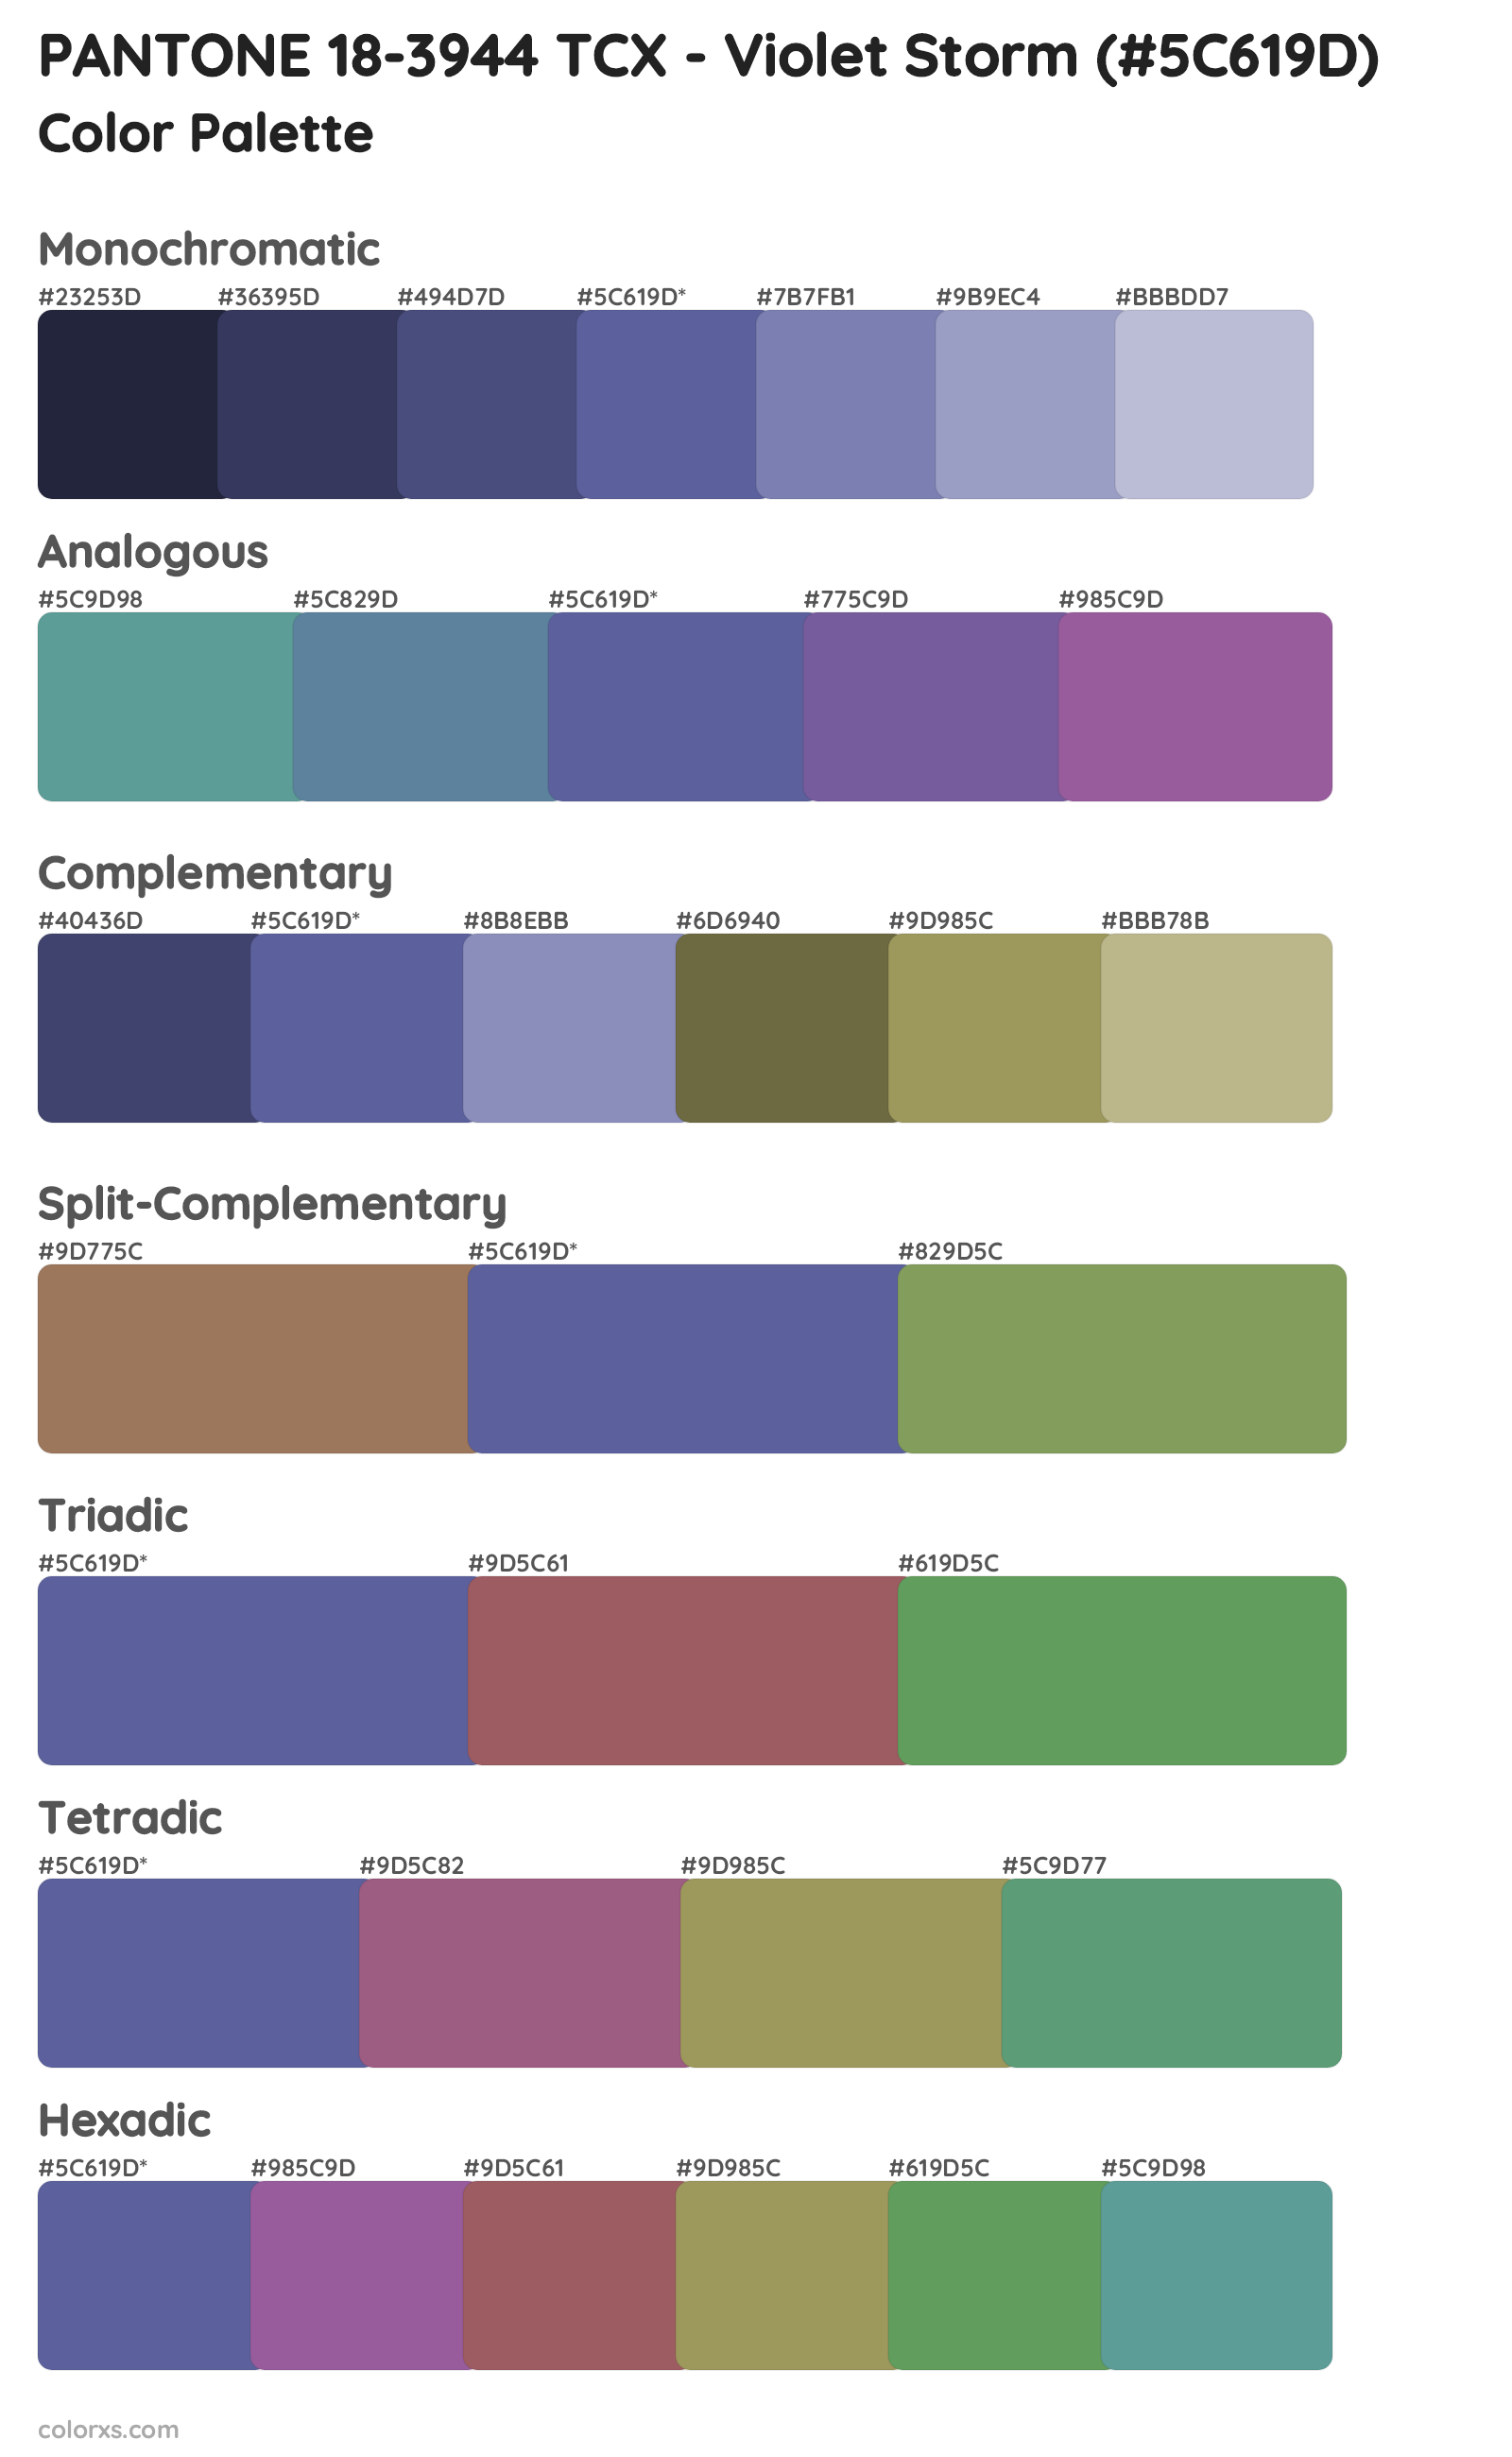 PANTONE 18-3944 TCX - Violet Storm Color Scheme Palettes